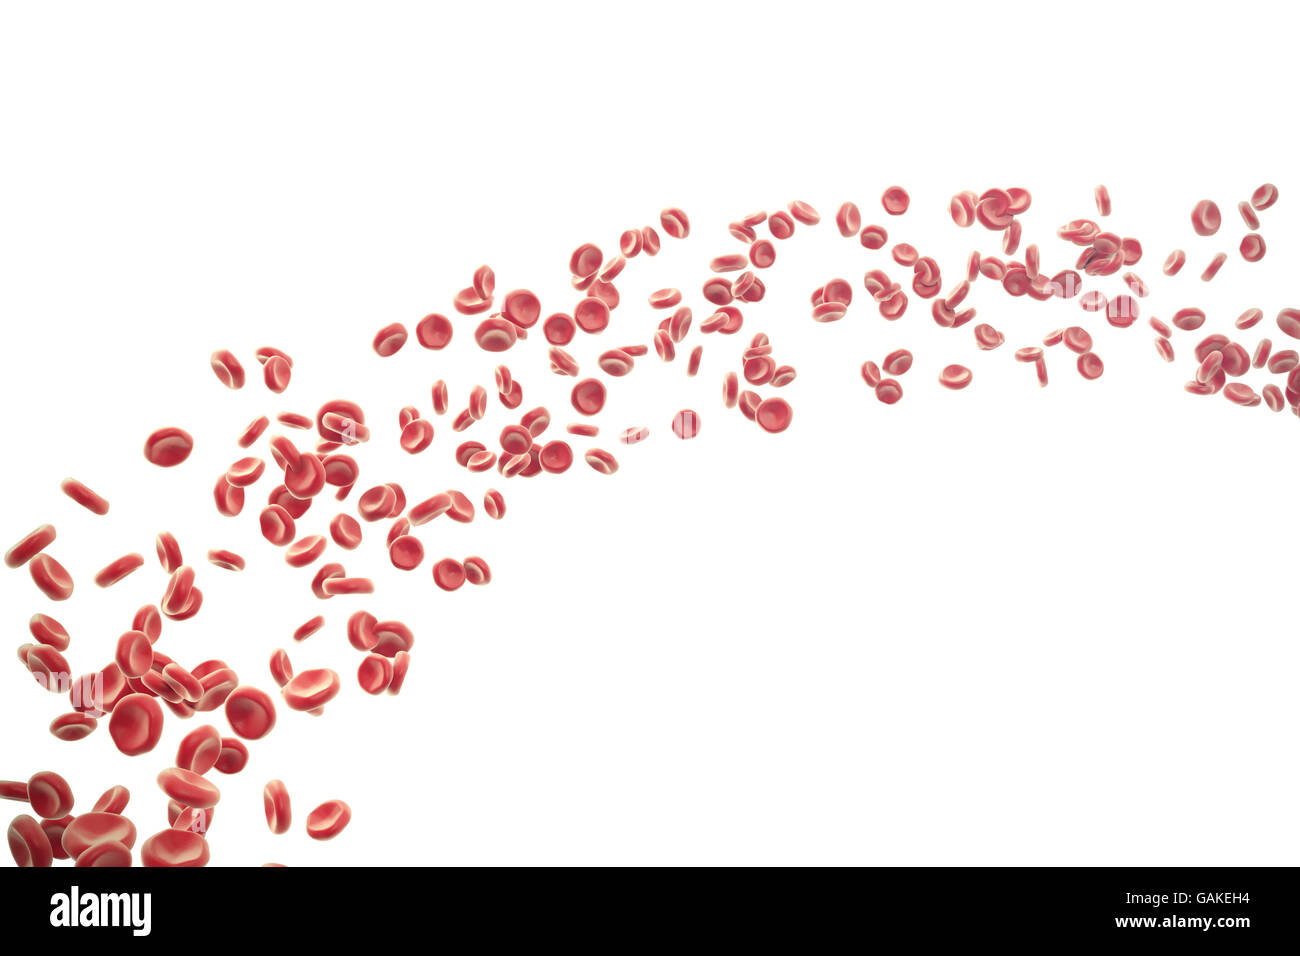 Illustration des globules rouges isolé sur fond blanc. Banque D'Images